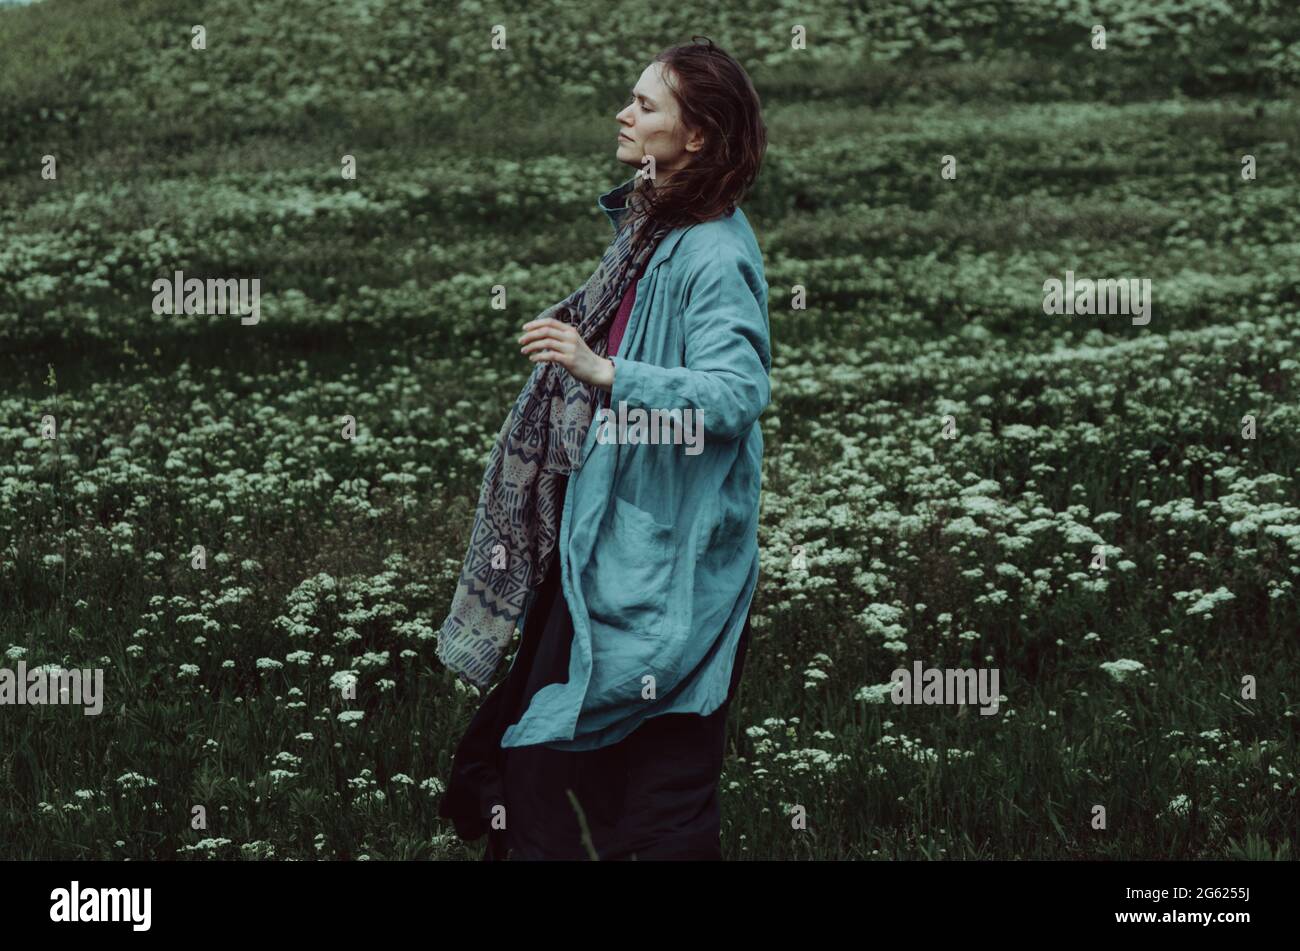 Ritratto laterale di una donna in cardigan di lino acqueo che cammina su un campo verde in una giornata ventosa. Concetto: Connessione con la natura, spiritualità, salute mentale Foto Stock